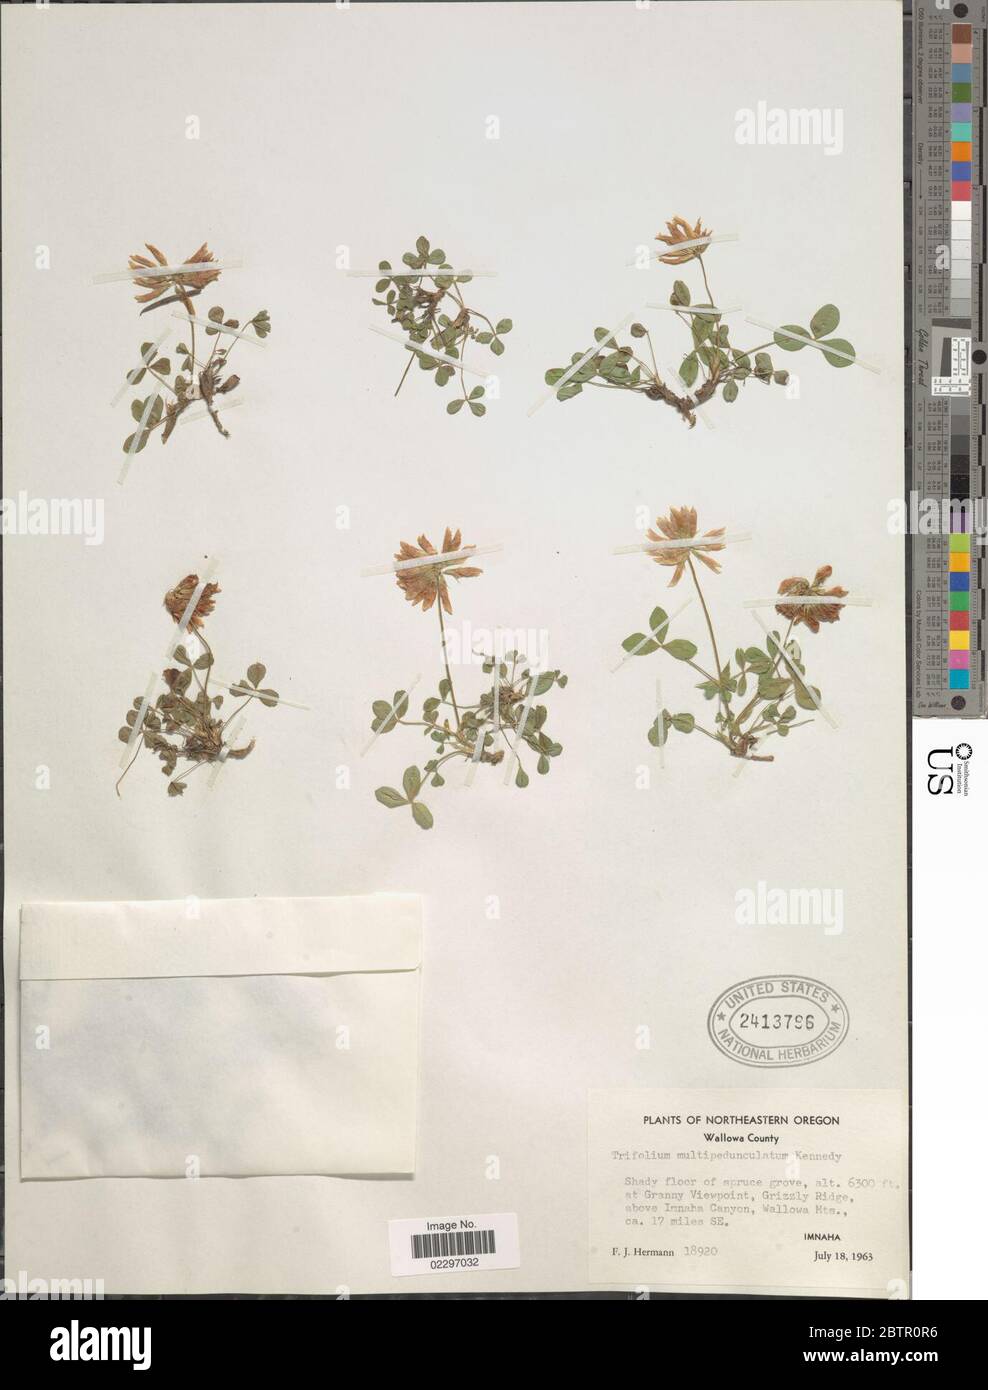 Trifolium longipes subsp multipedunculatum PB Kenn JM Gillett. Stock Photo